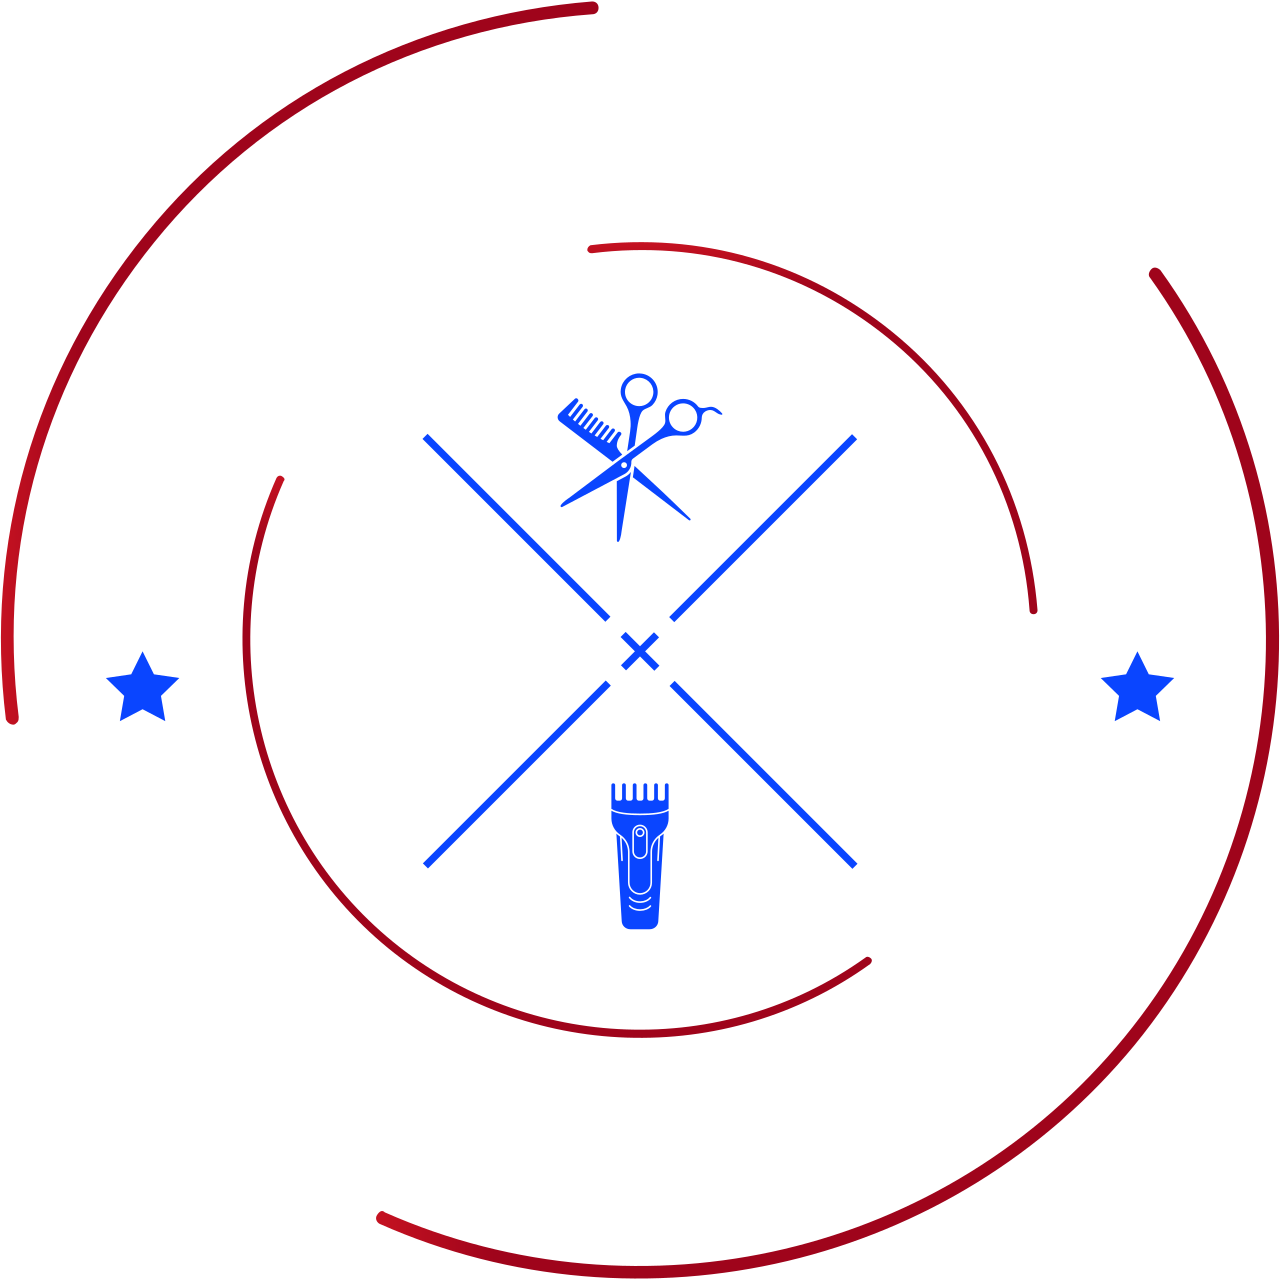 Reeve’s barbershop's logo